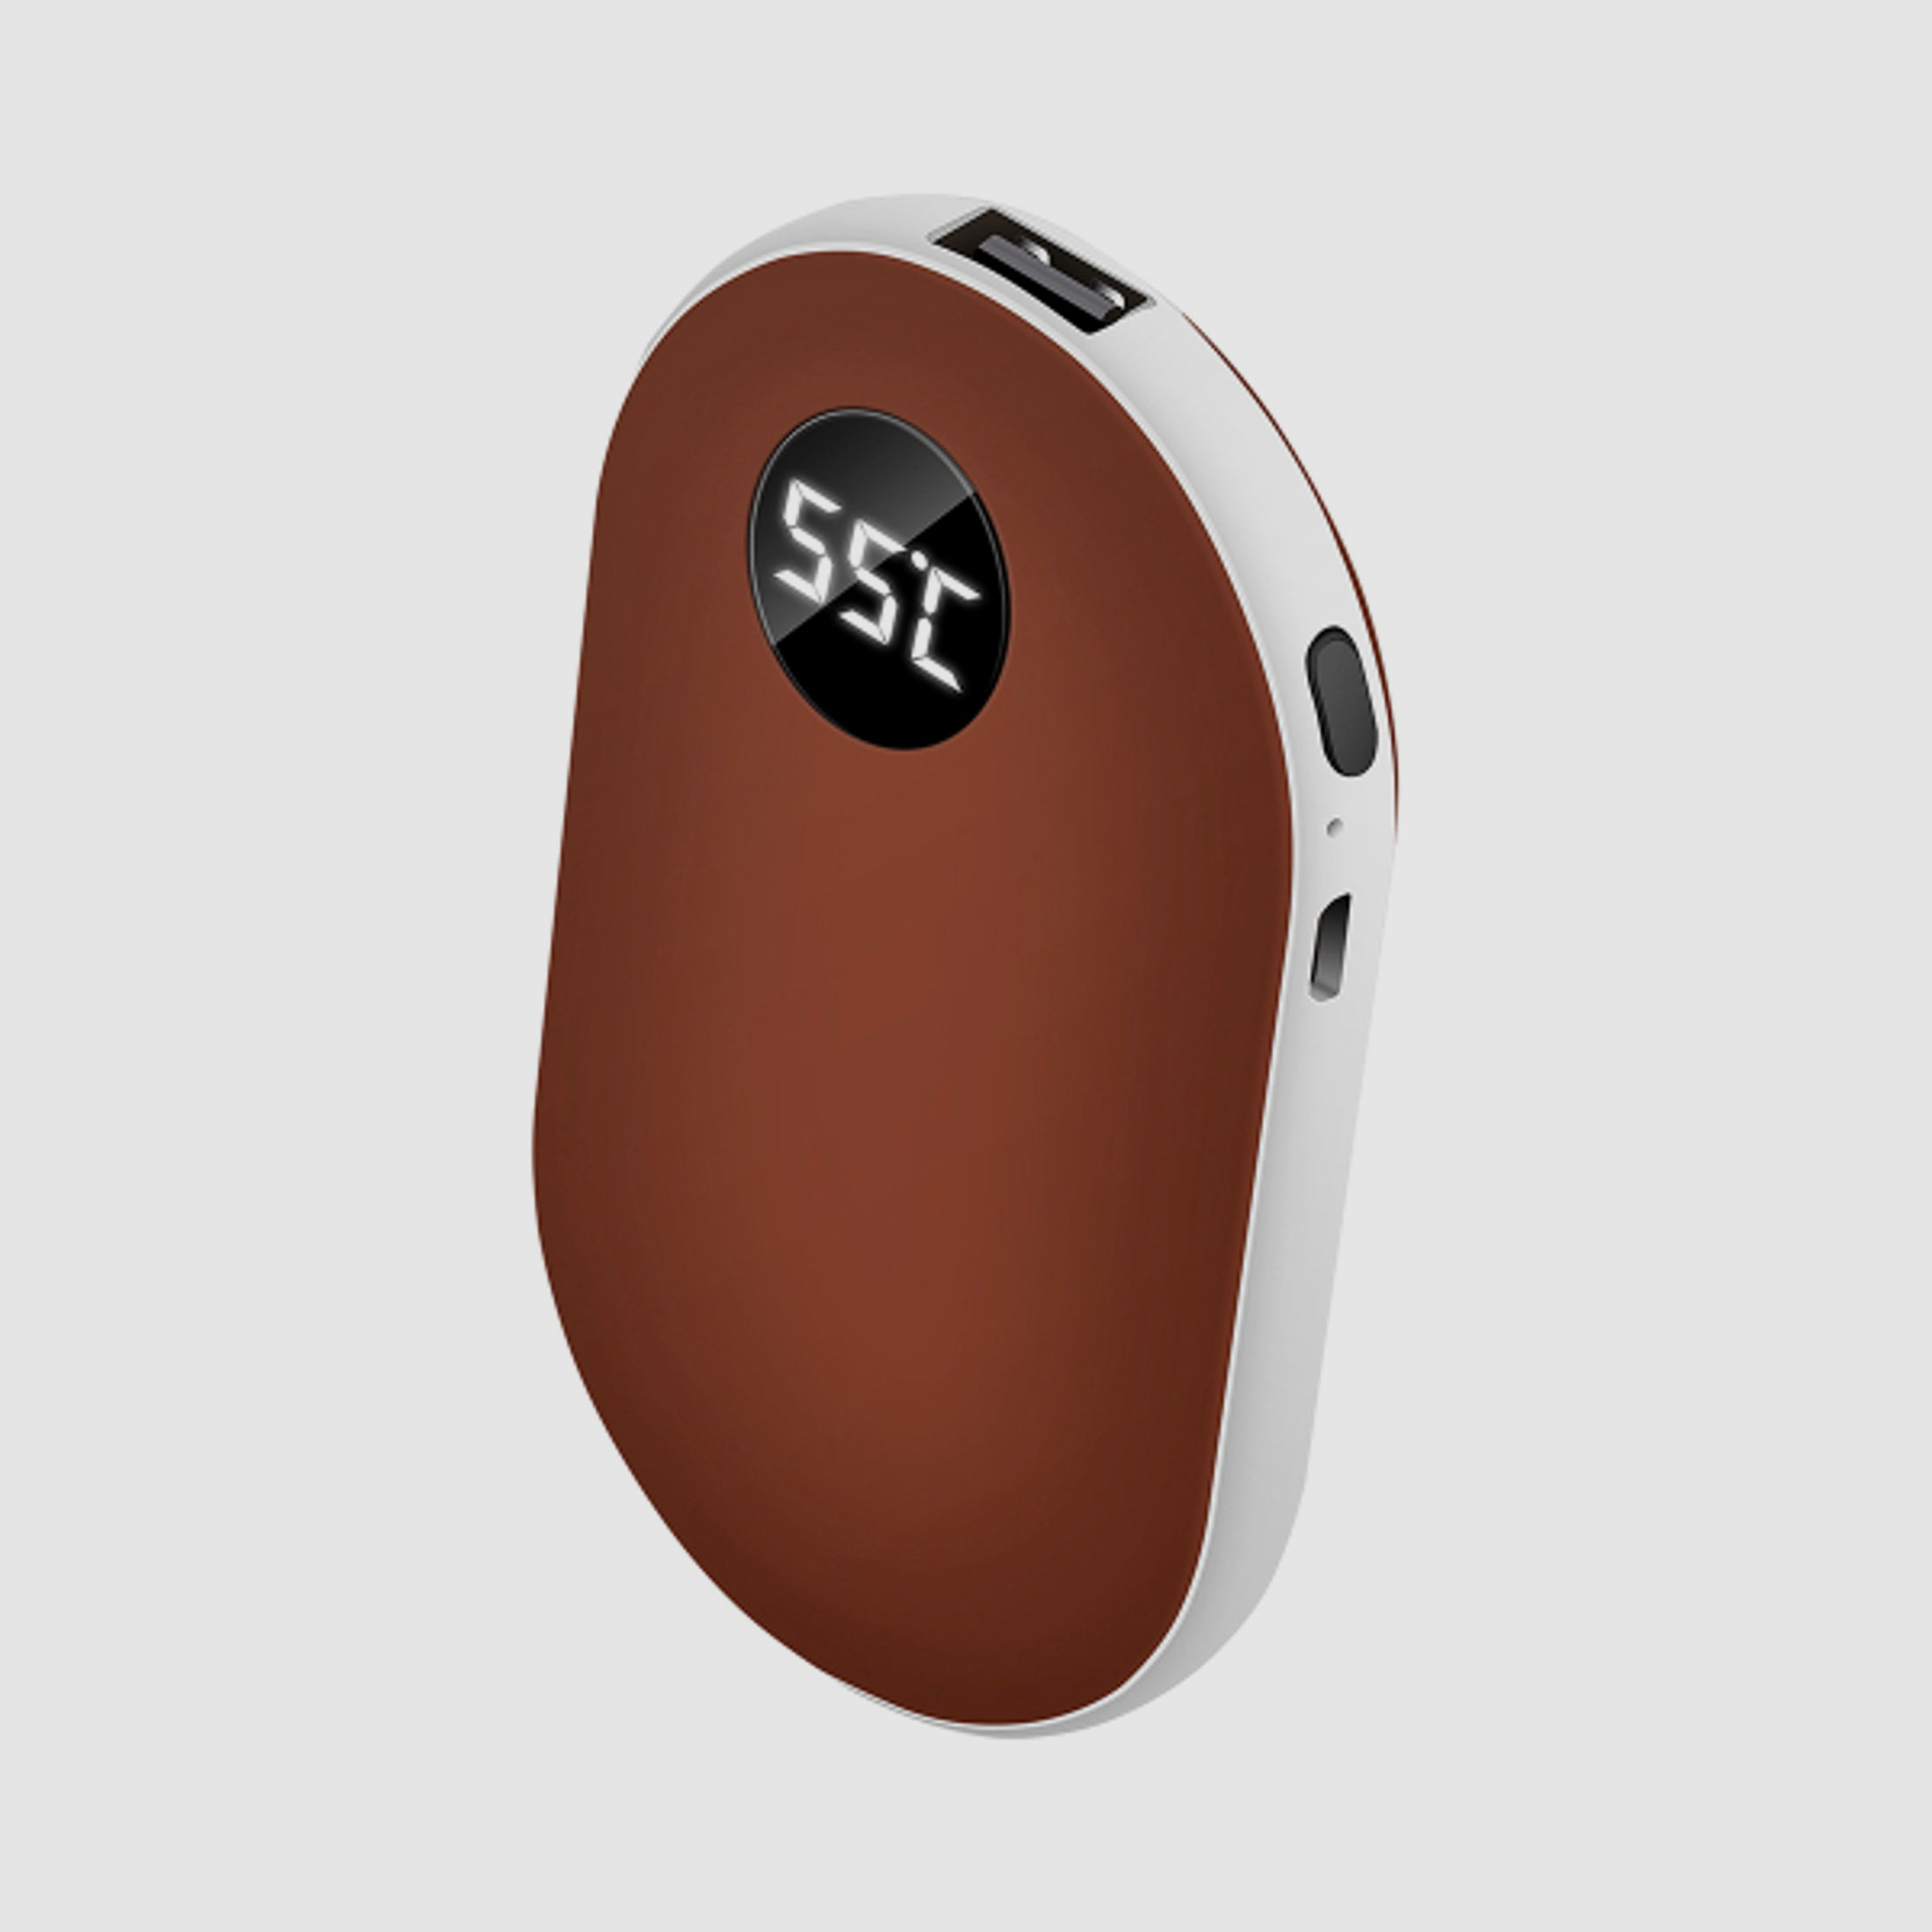 Elektrischer Handwärmer ROTBRAUN - USB wiederaufladbar -ca. 42-52 Grad einstellbar - Taschenwärmer